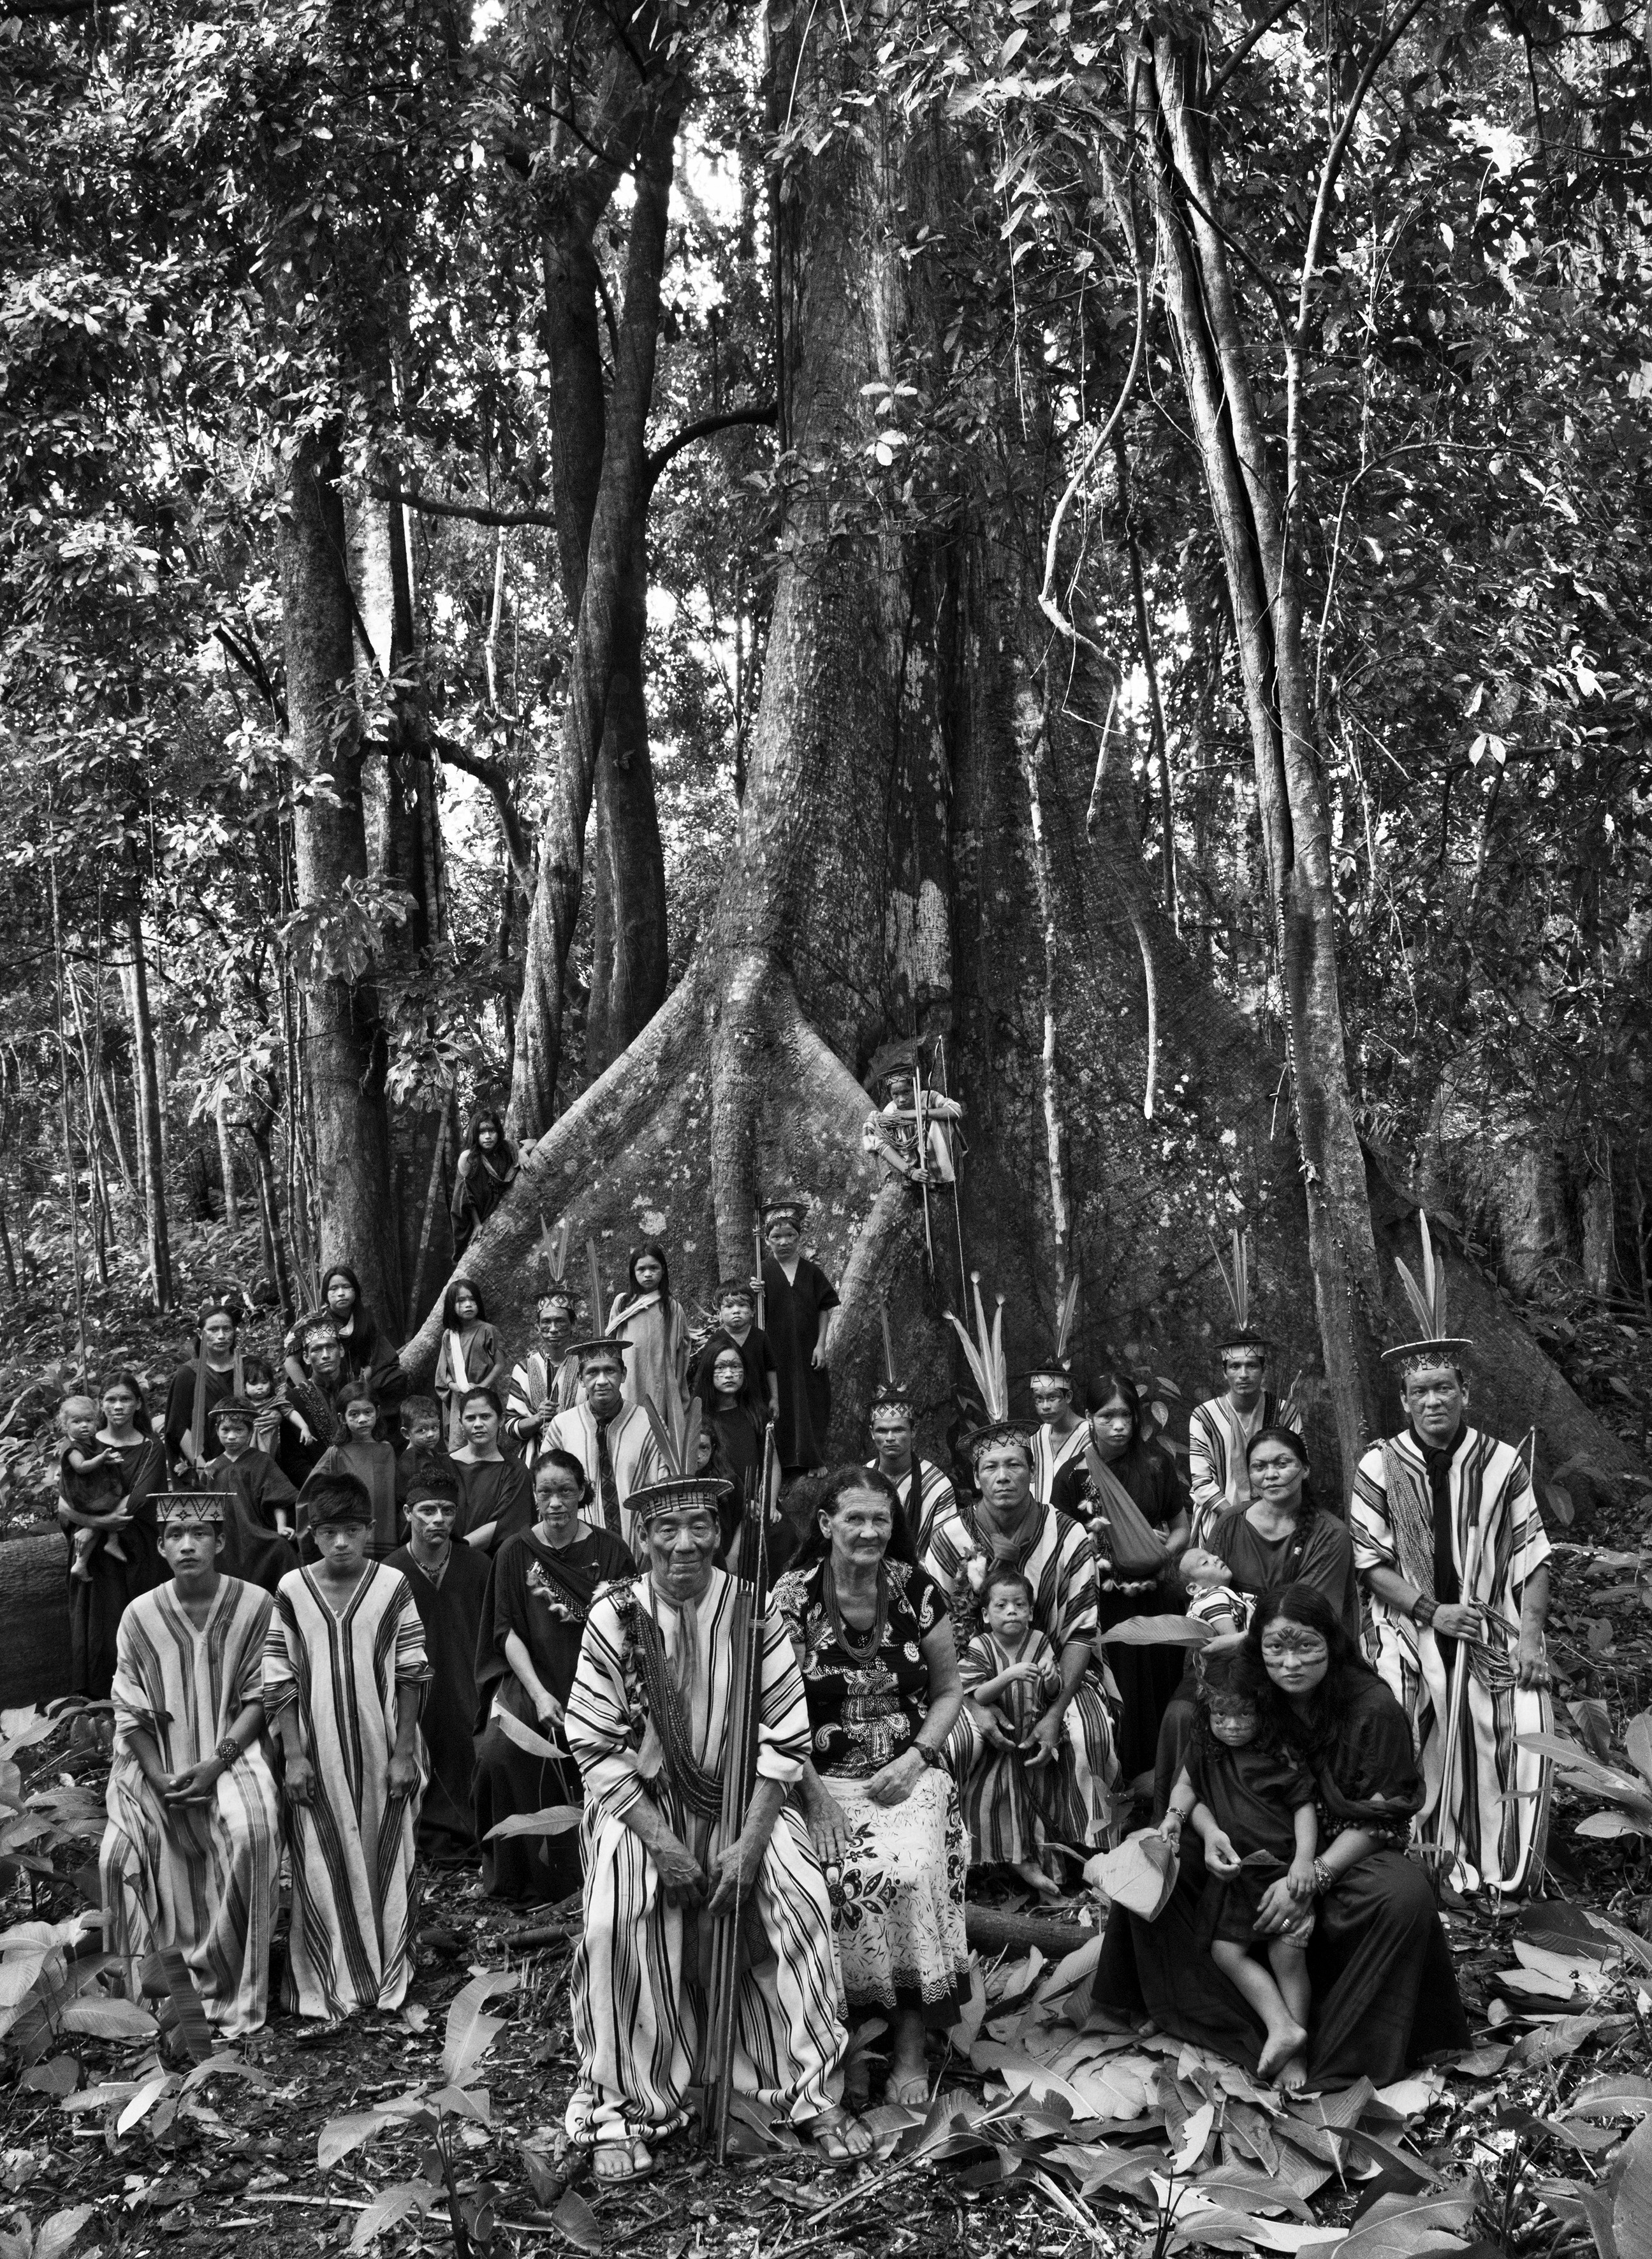 Exposição 'Amazônia' de Sebastião Salgado chega com muita potência cultural no Sesc Pompeia (Foto: Sebastião Salgado)